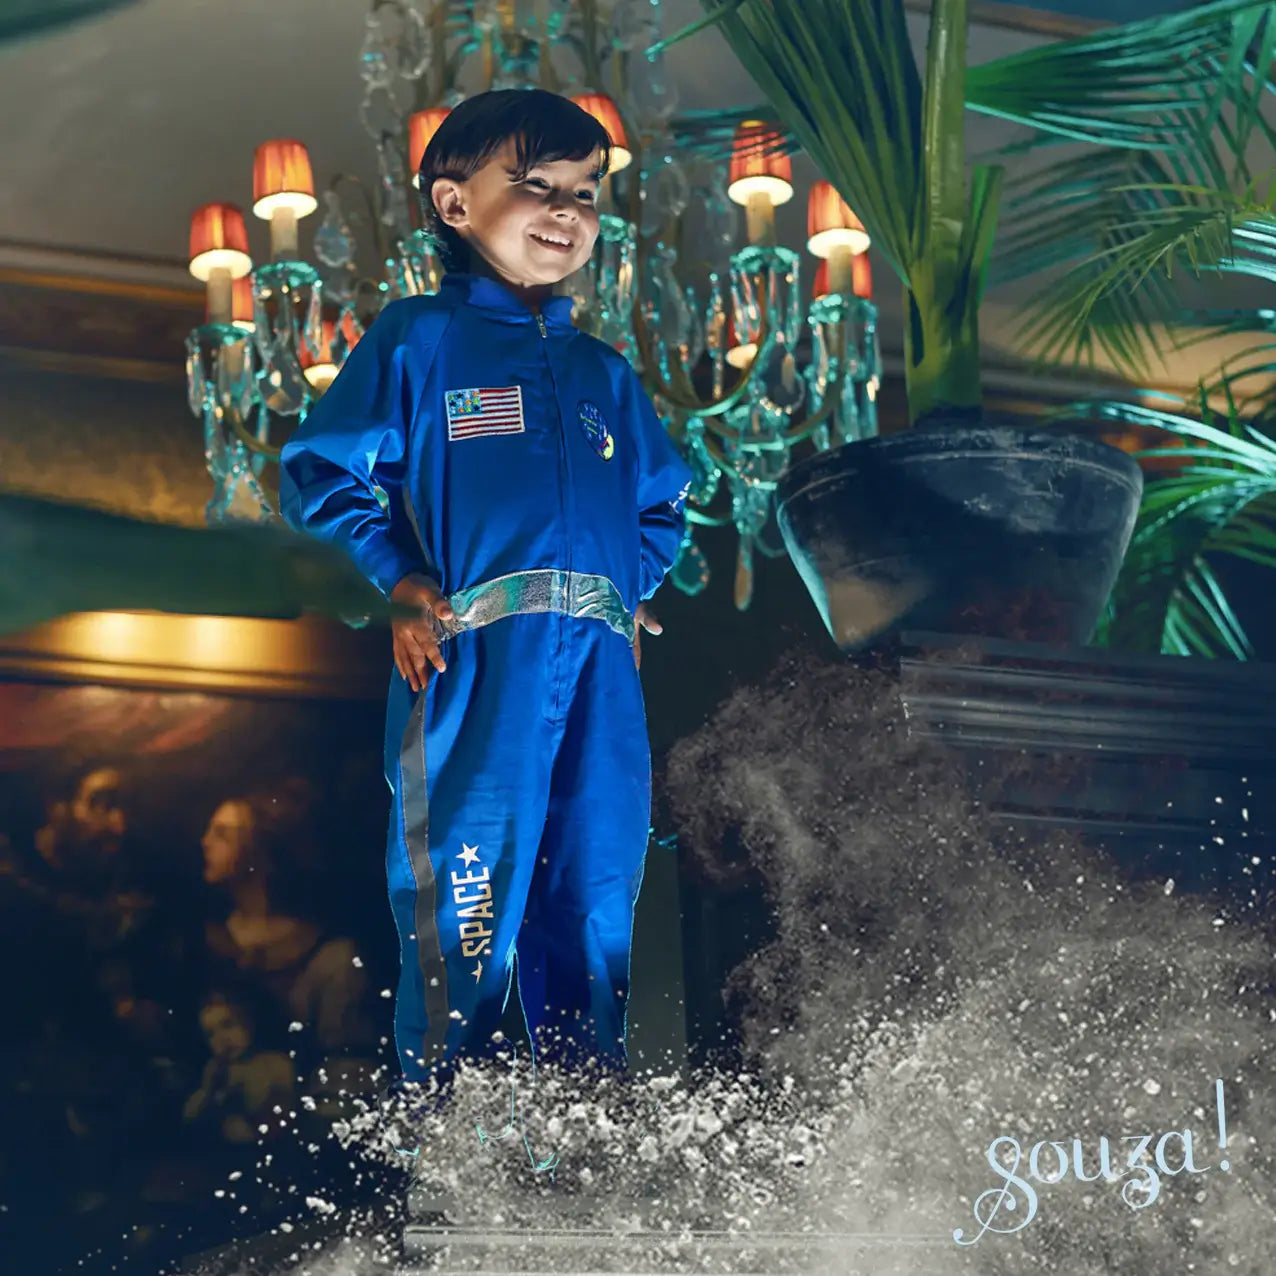 kostuum astronaut blauw souza verkleedkledij kinderen carnaval ruimtevaarder verkleedpak space sfeerfoto